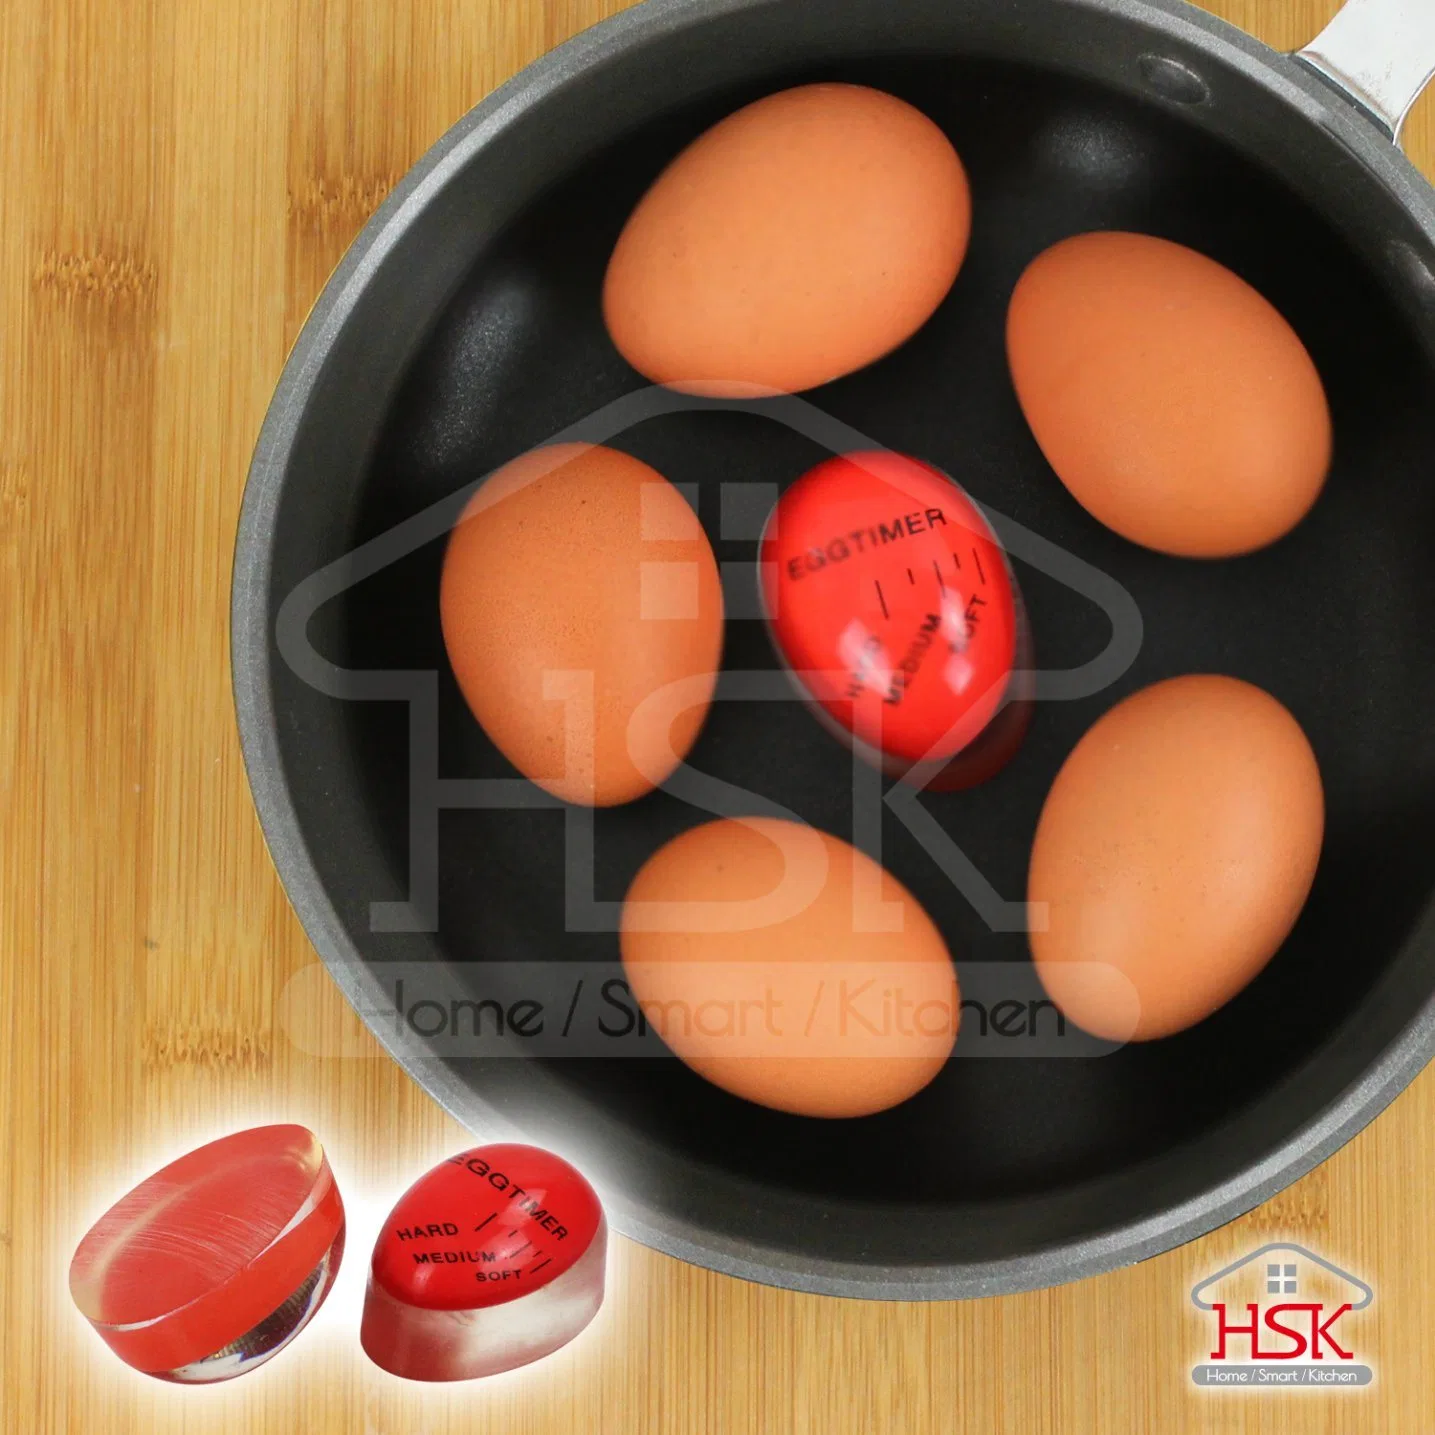 Cambio de color de reloj de arena para una perfecta huevos Gadgets de cocina